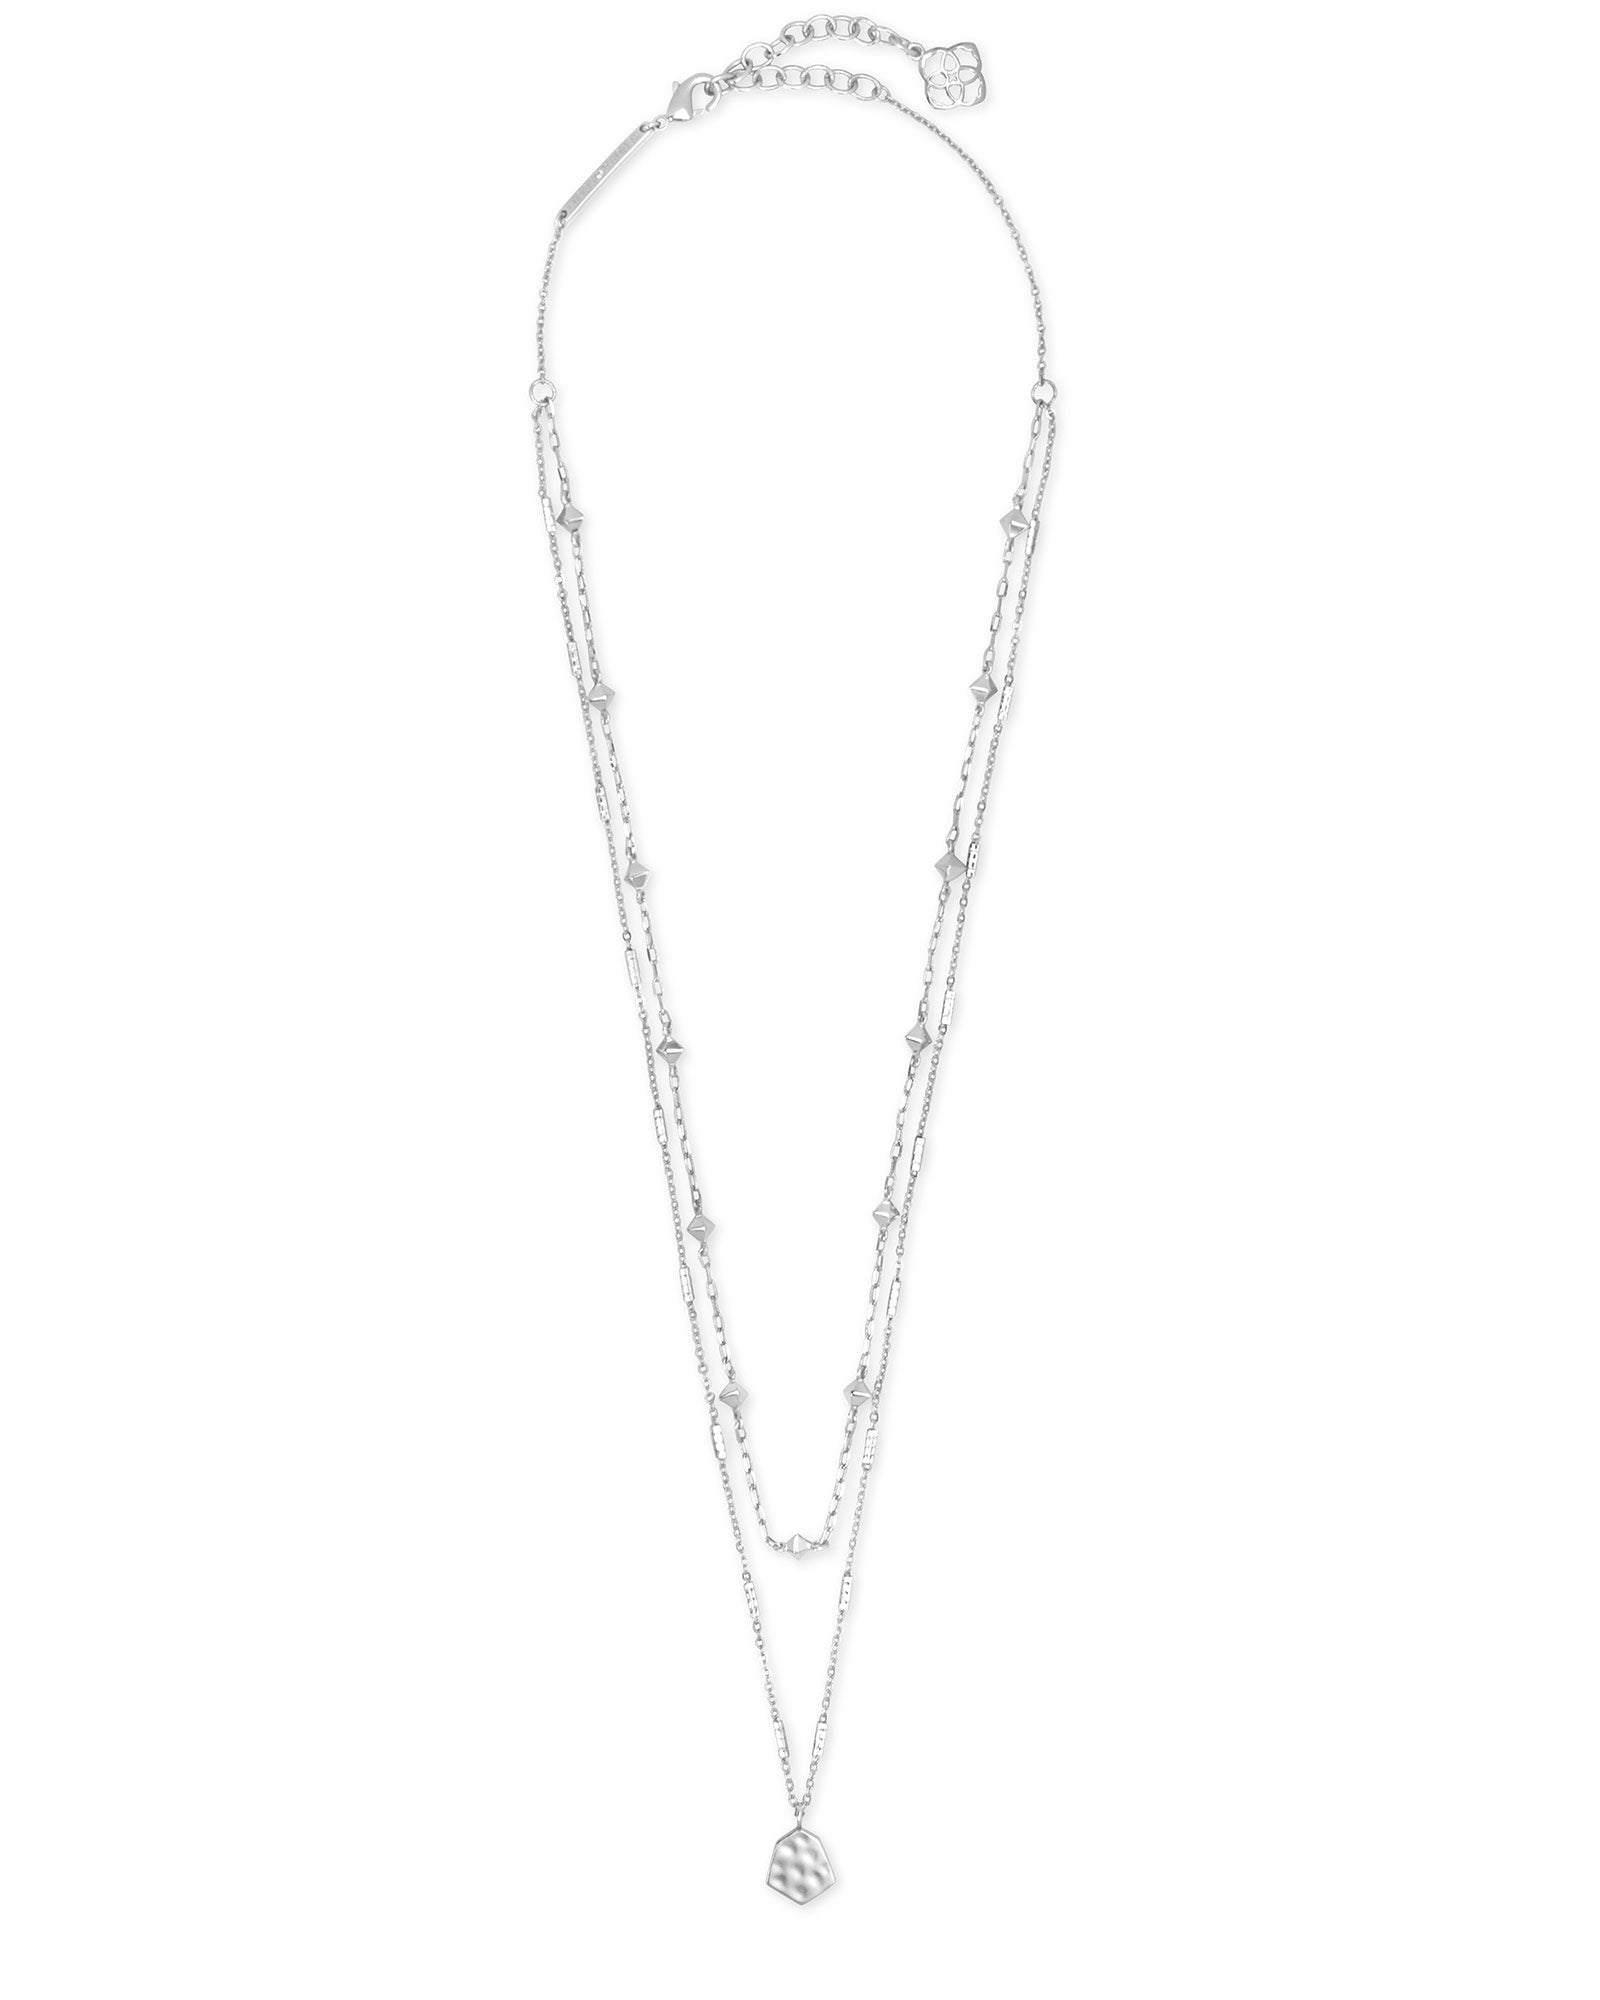 Clove Multi Strand Necklace - Bright Silver